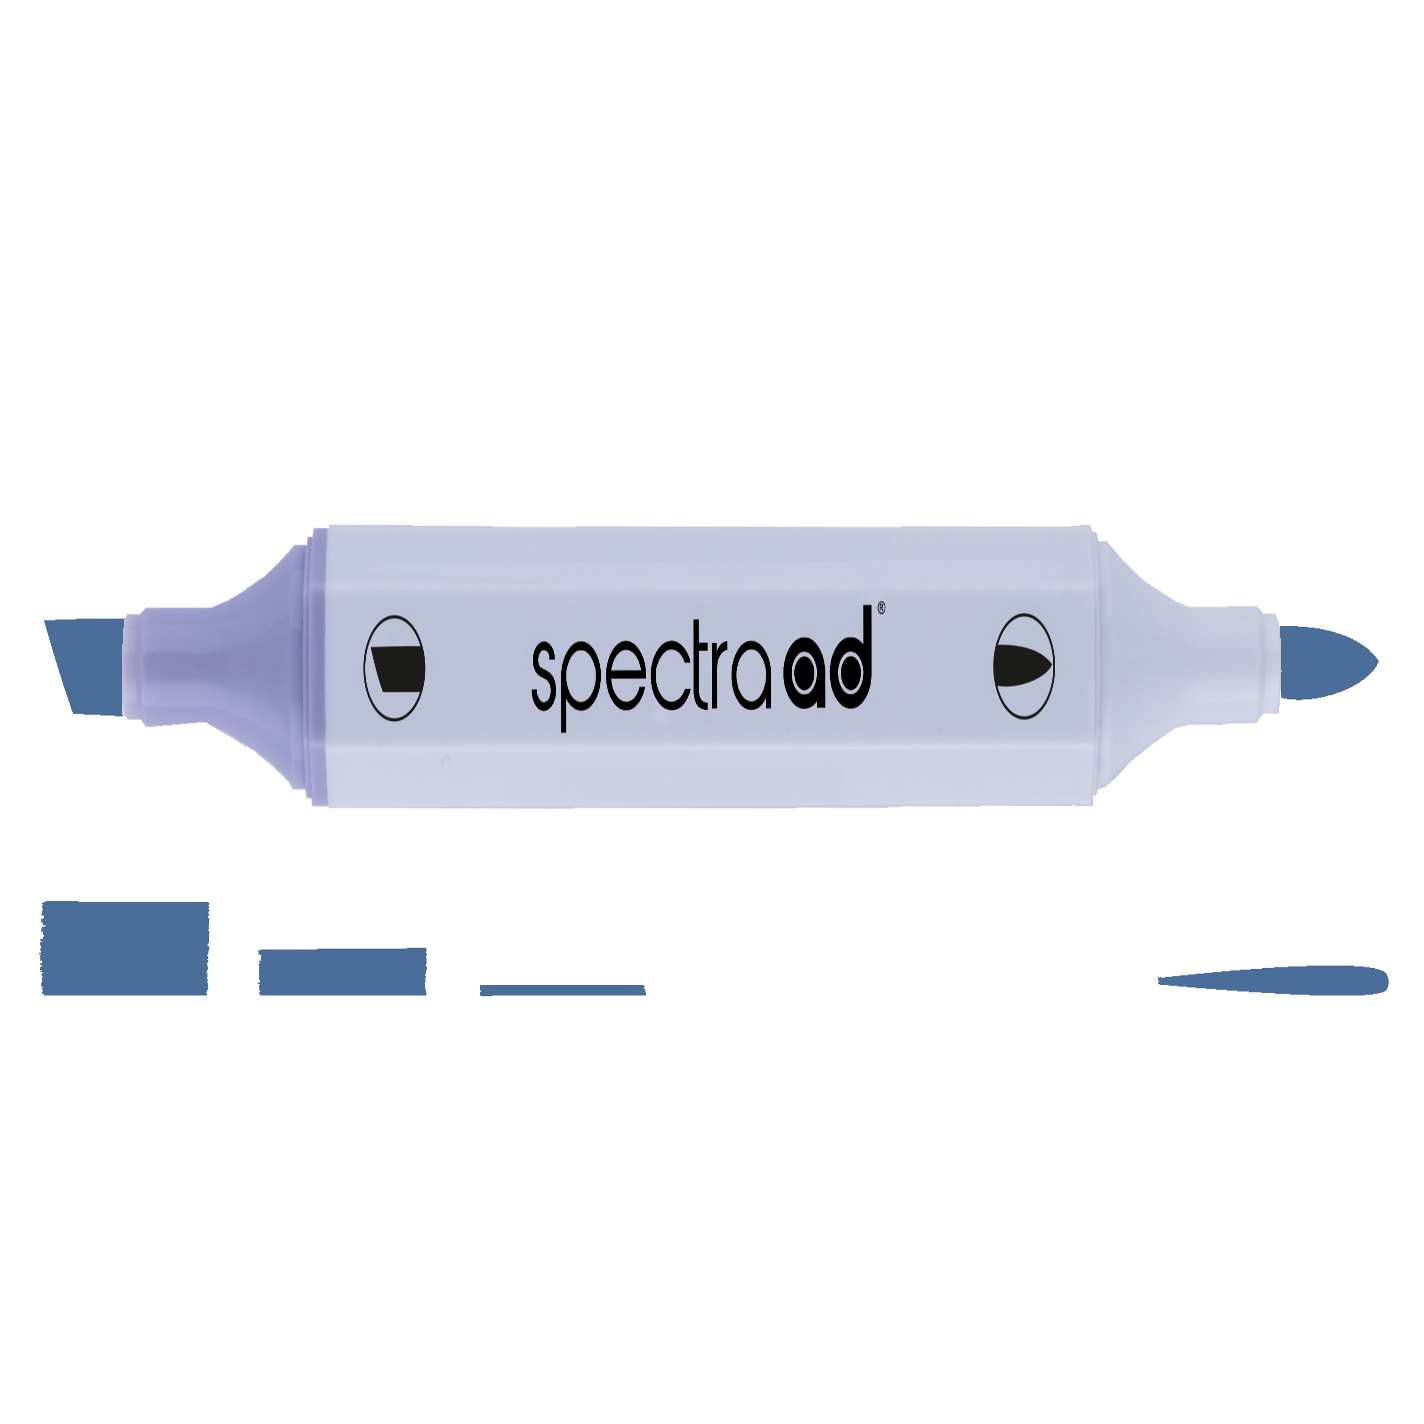 AD Marker Spectra Ink Blue